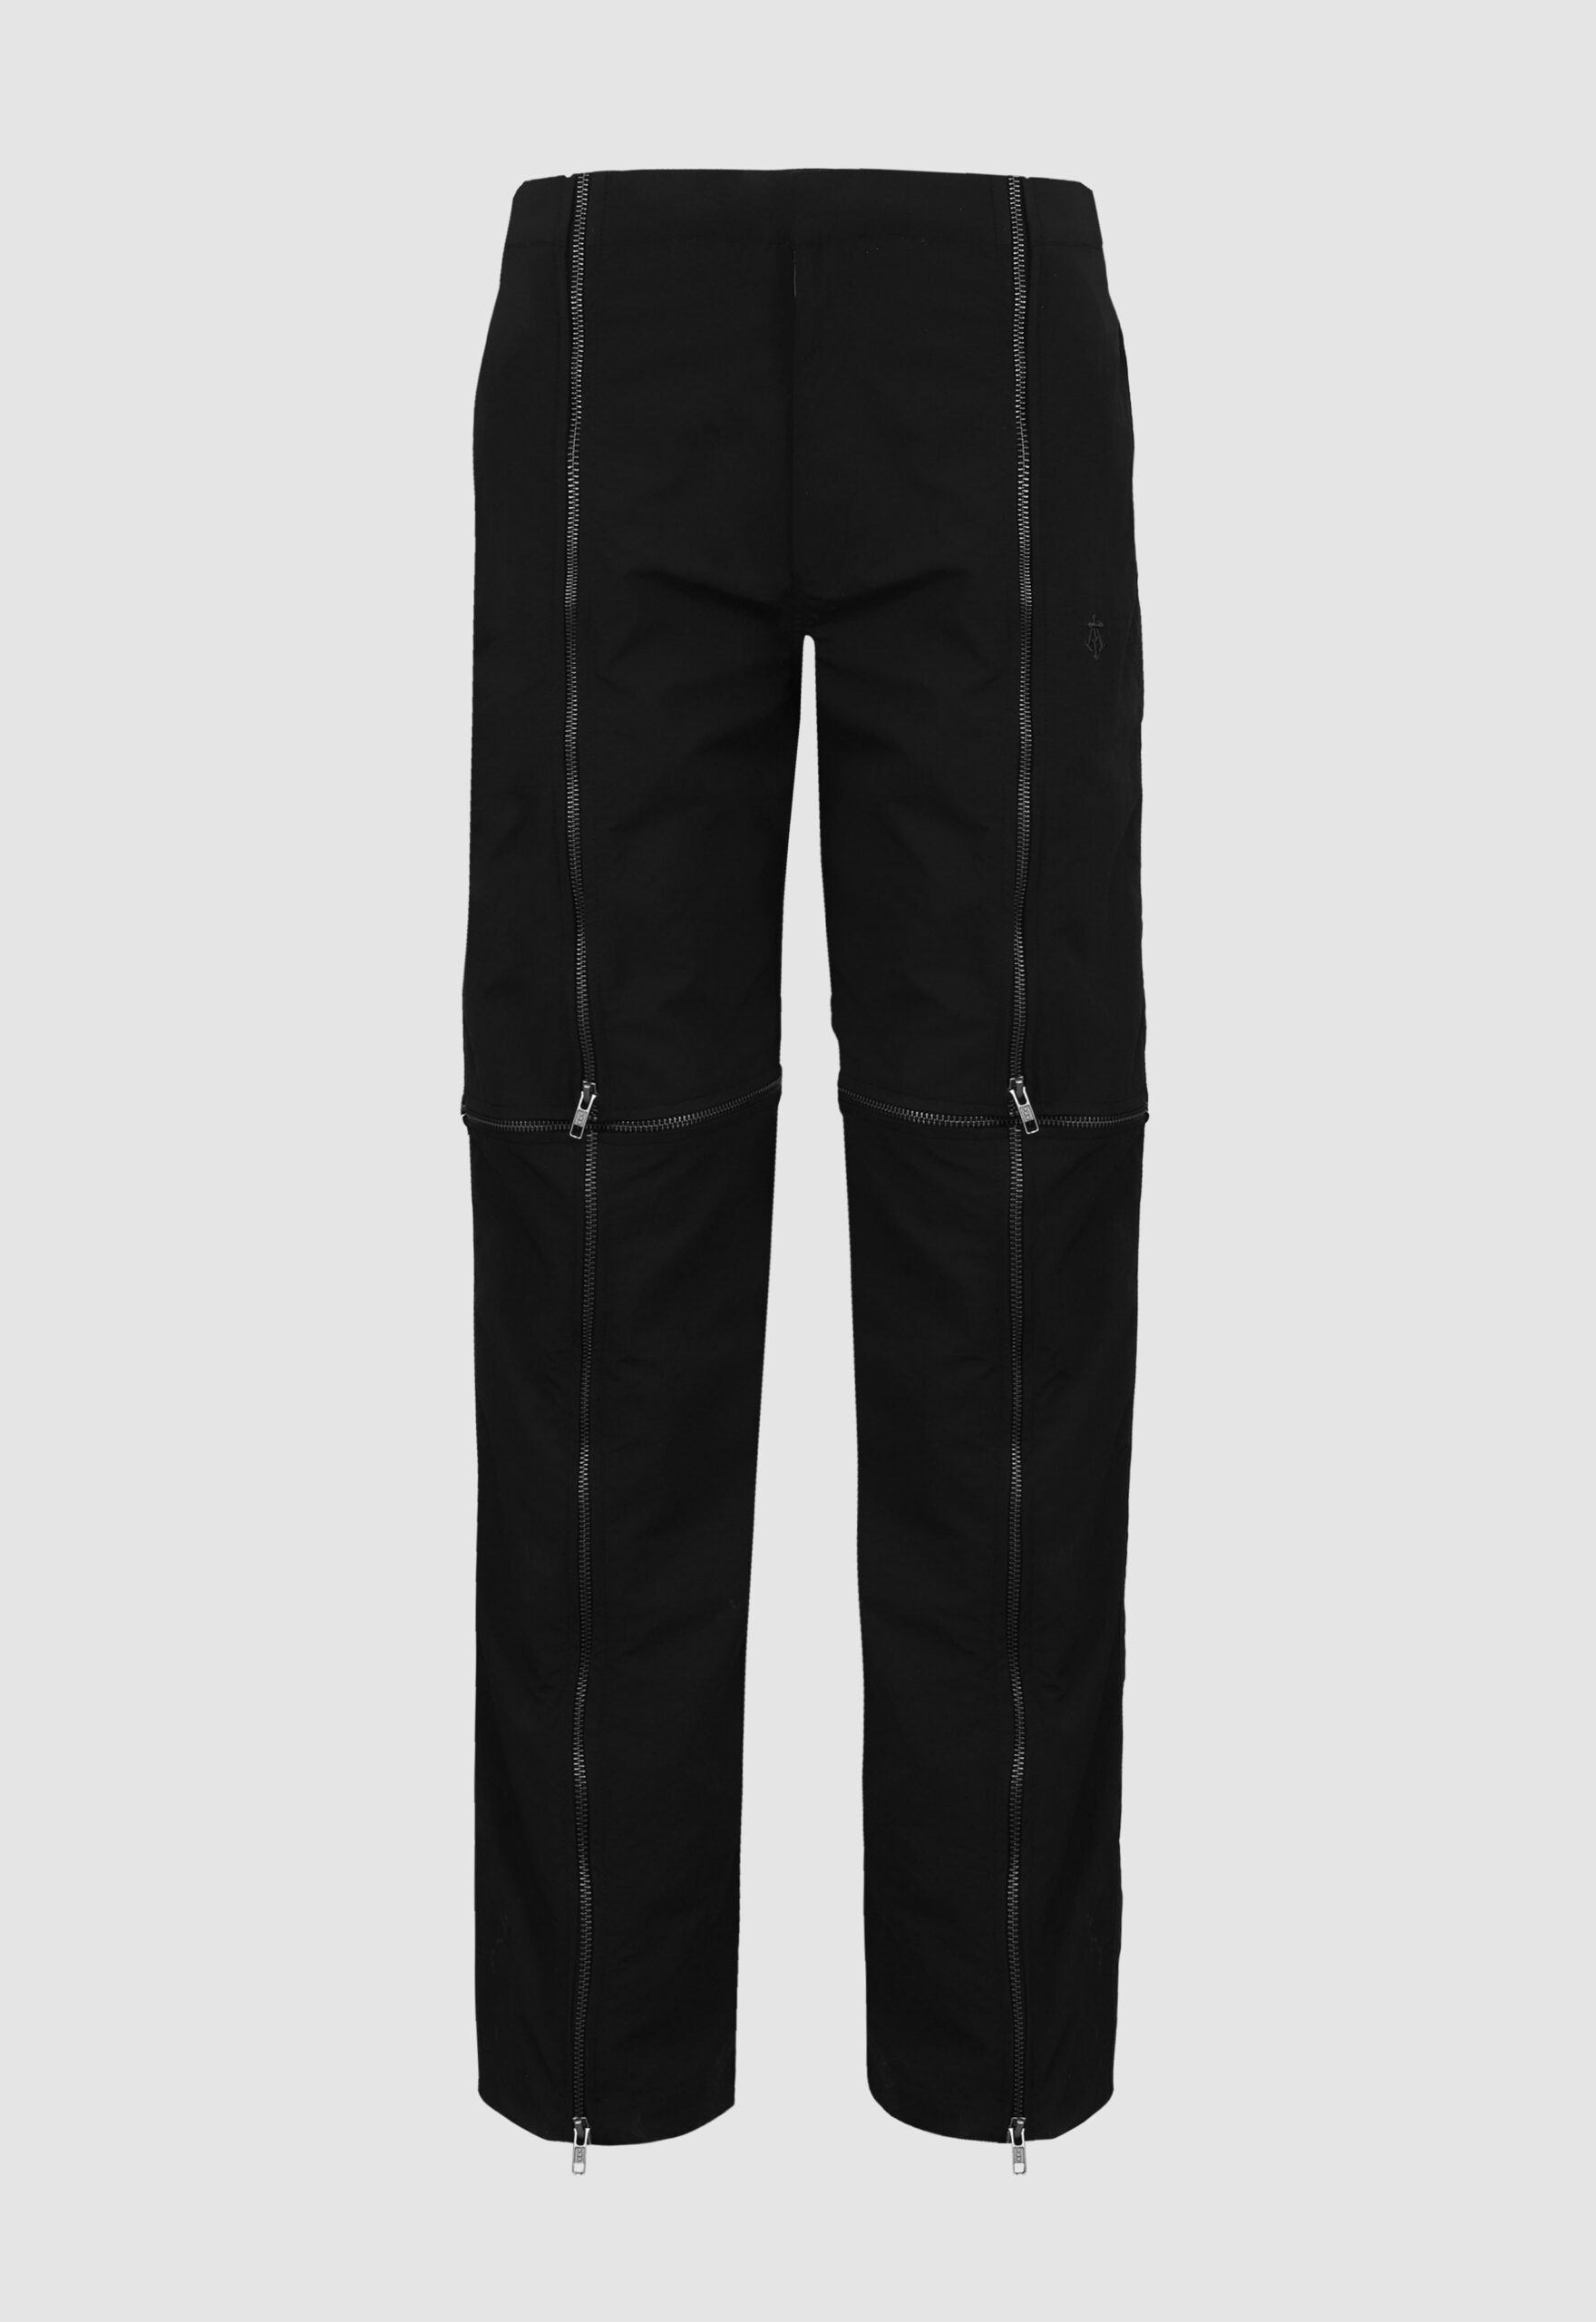 CRUSHED NYLON DETACHABLE ZIP PANTS IN BLACK - almostgods.com